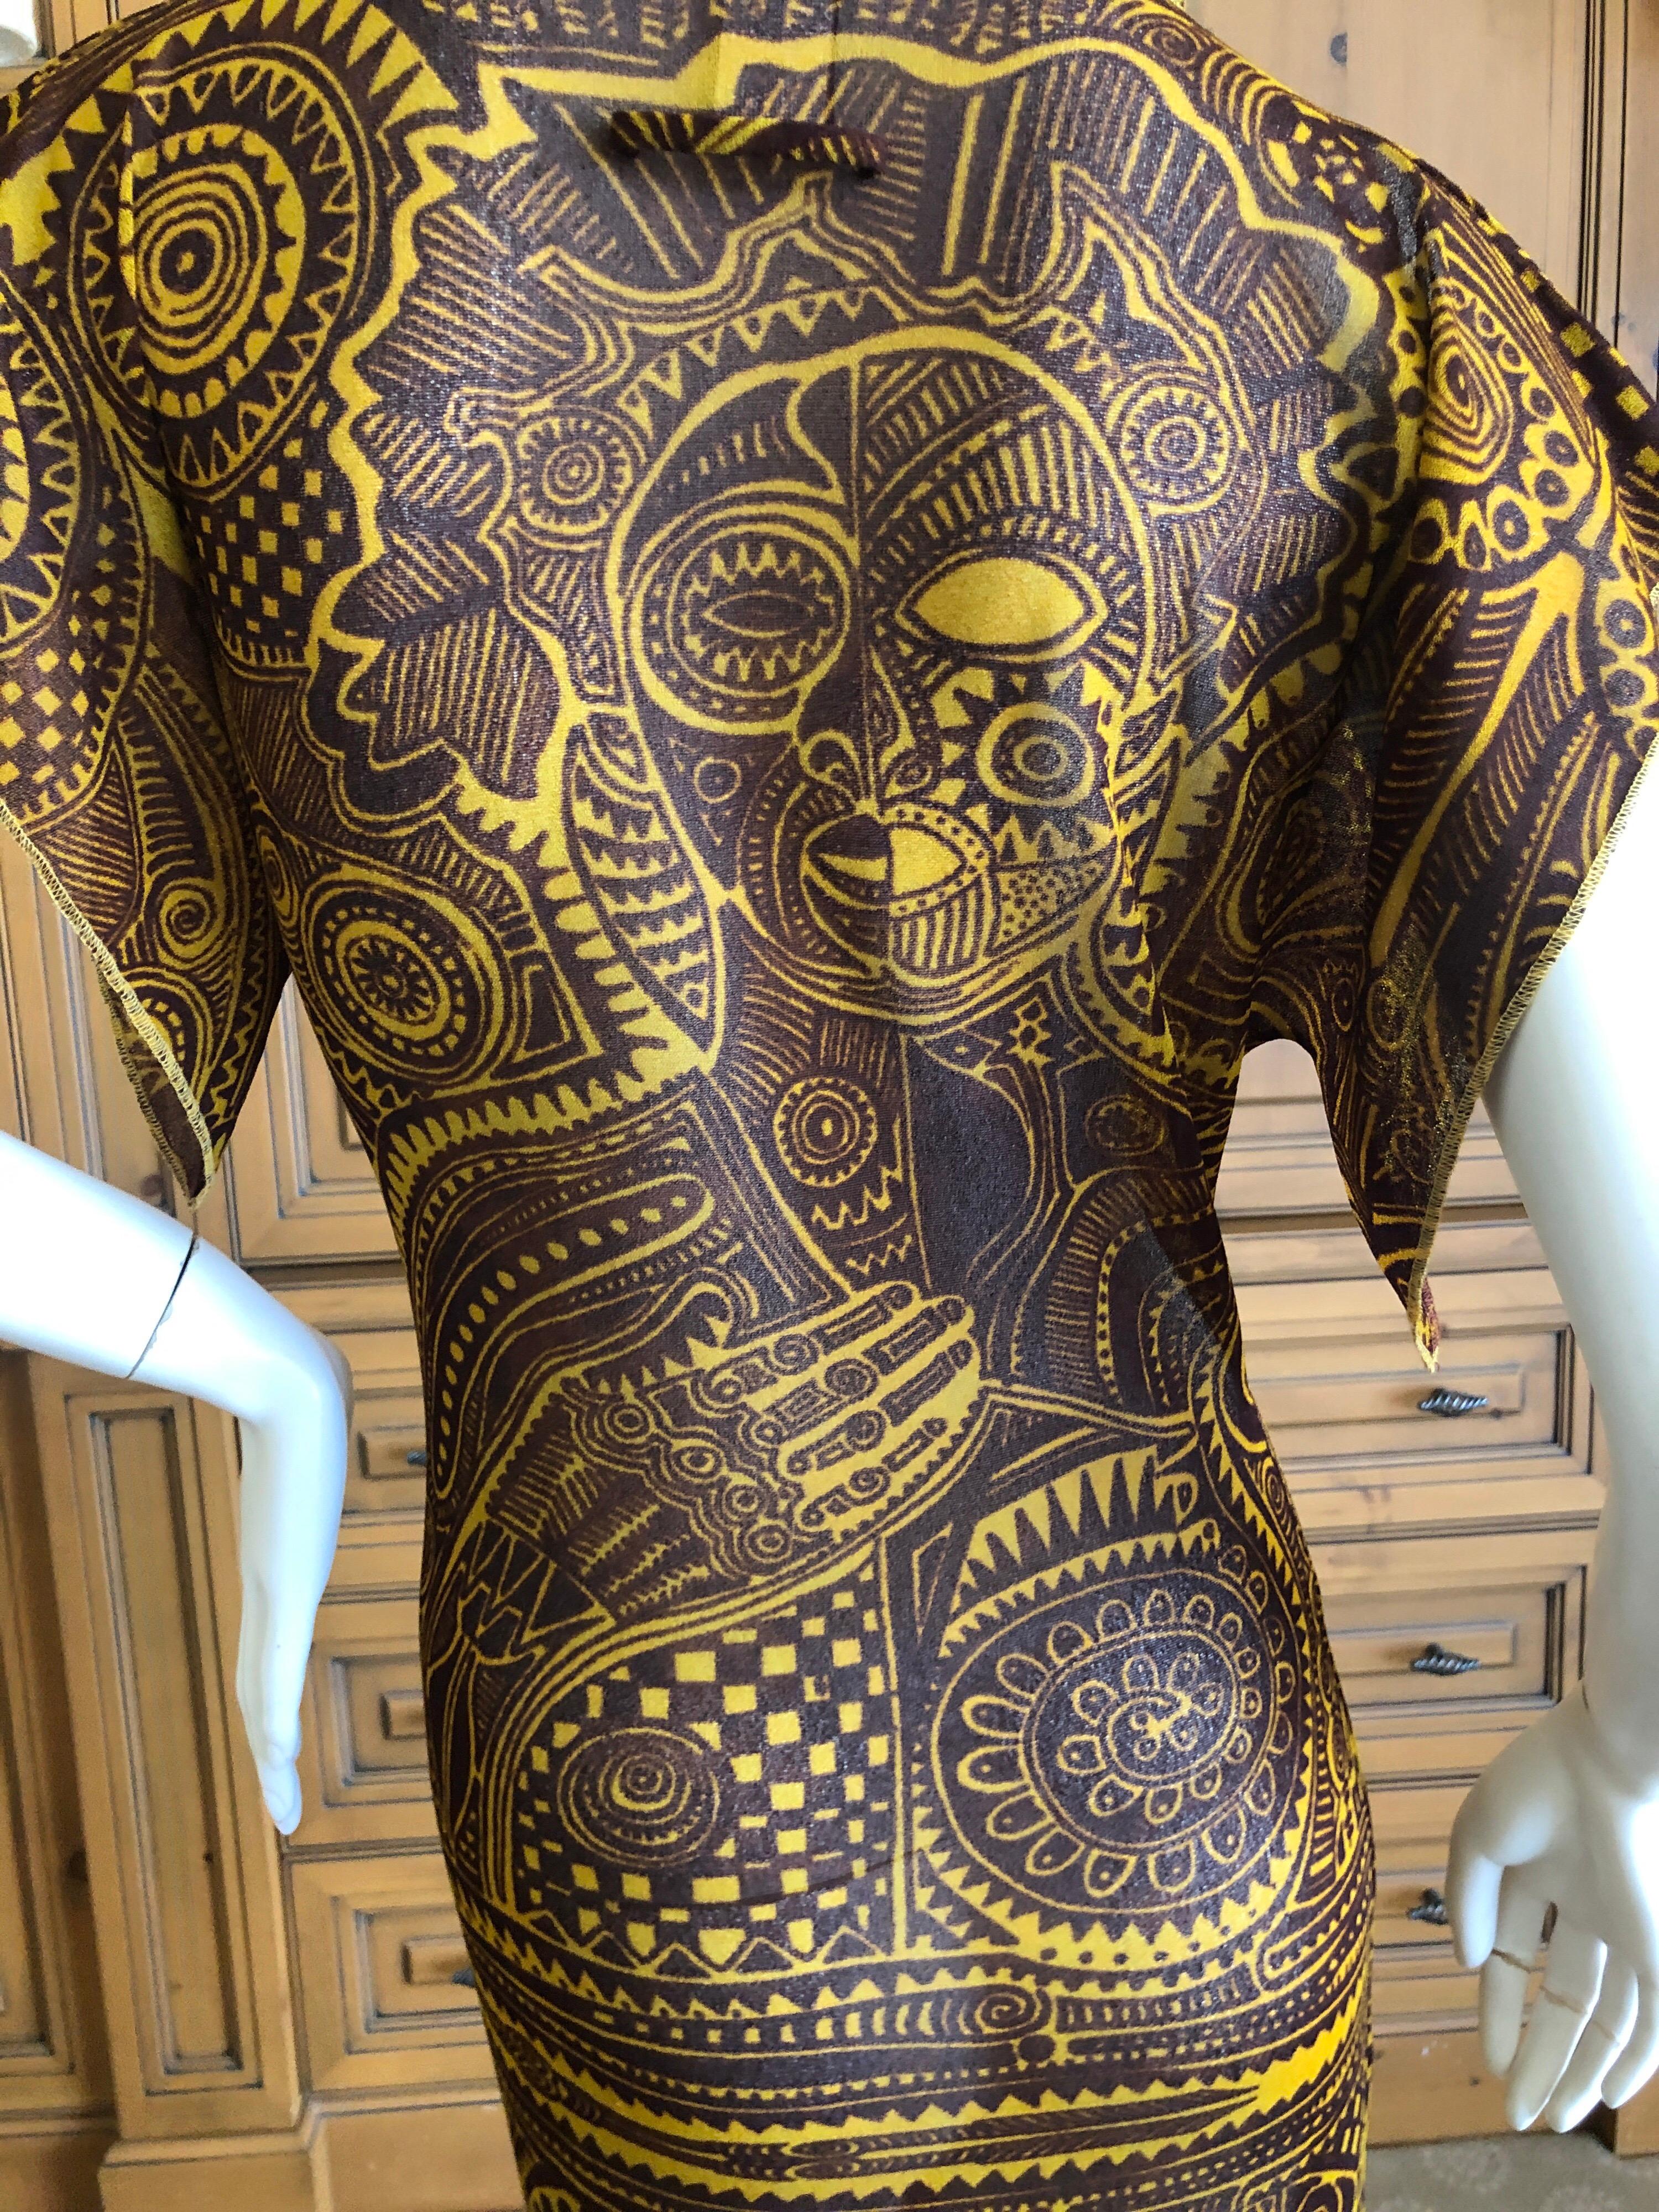 Jean Paul Gaultier Soleil Maori Tattoo Print Dress.
Size Small
Bust 34